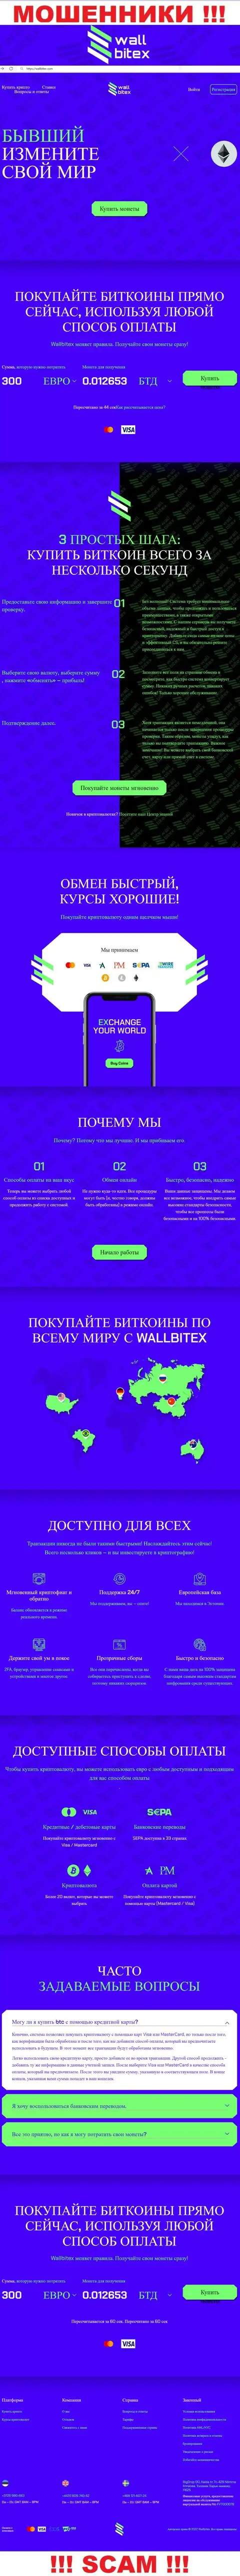 WallBitex Com - это официальный информационный ресурс мошеннической компании WallBitex